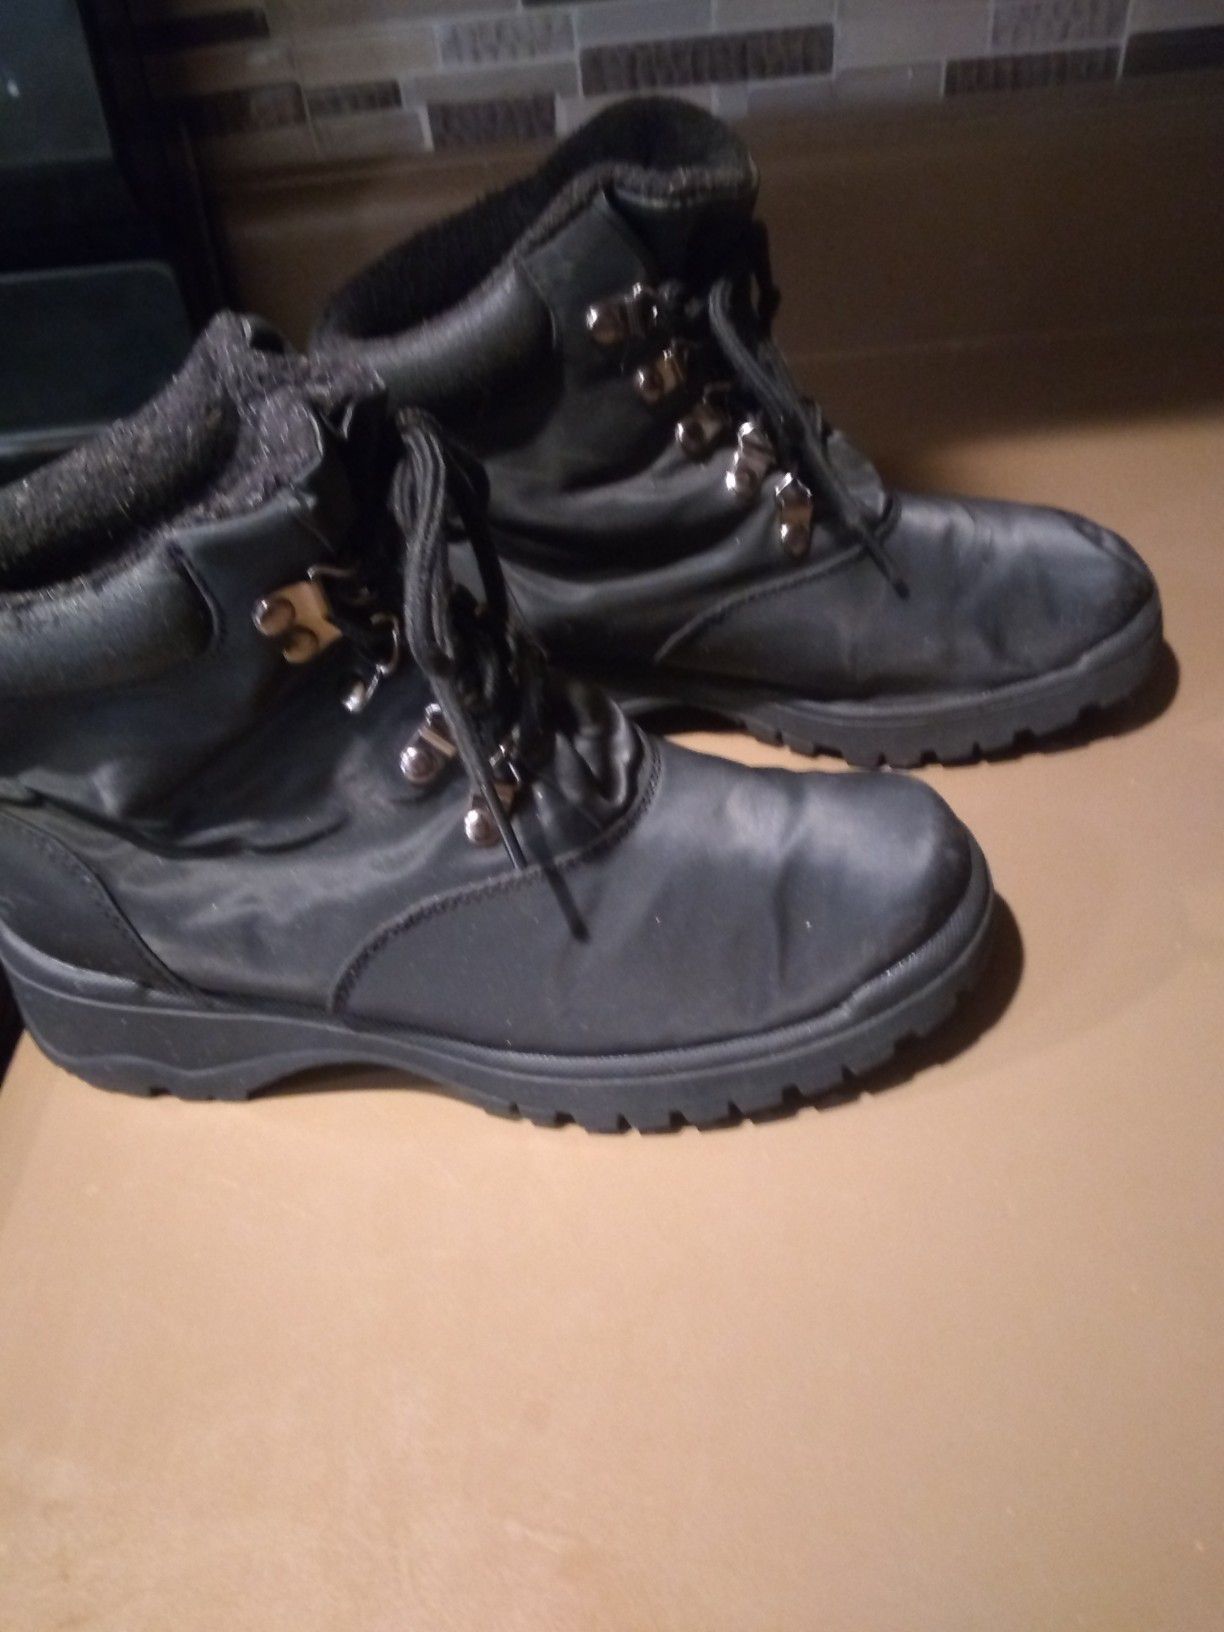 Children's leather Hiking boots. Read description